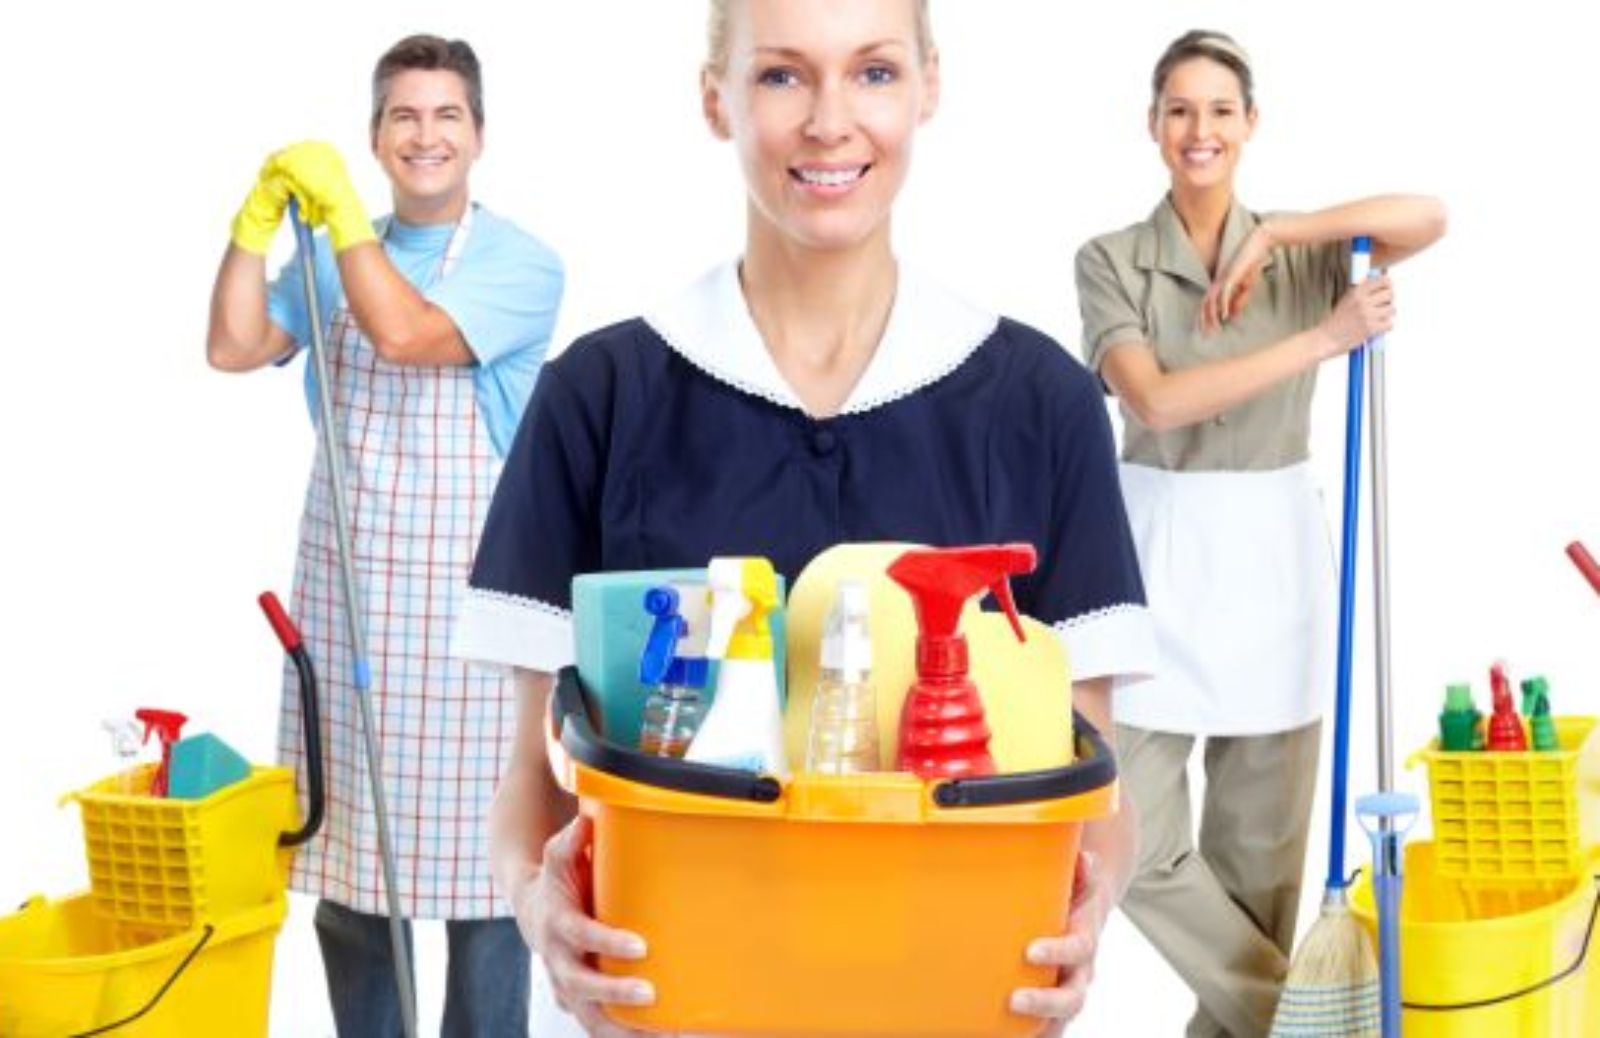 Come scegliere l’impresa di pulizie più adatta alle proprie esigenze